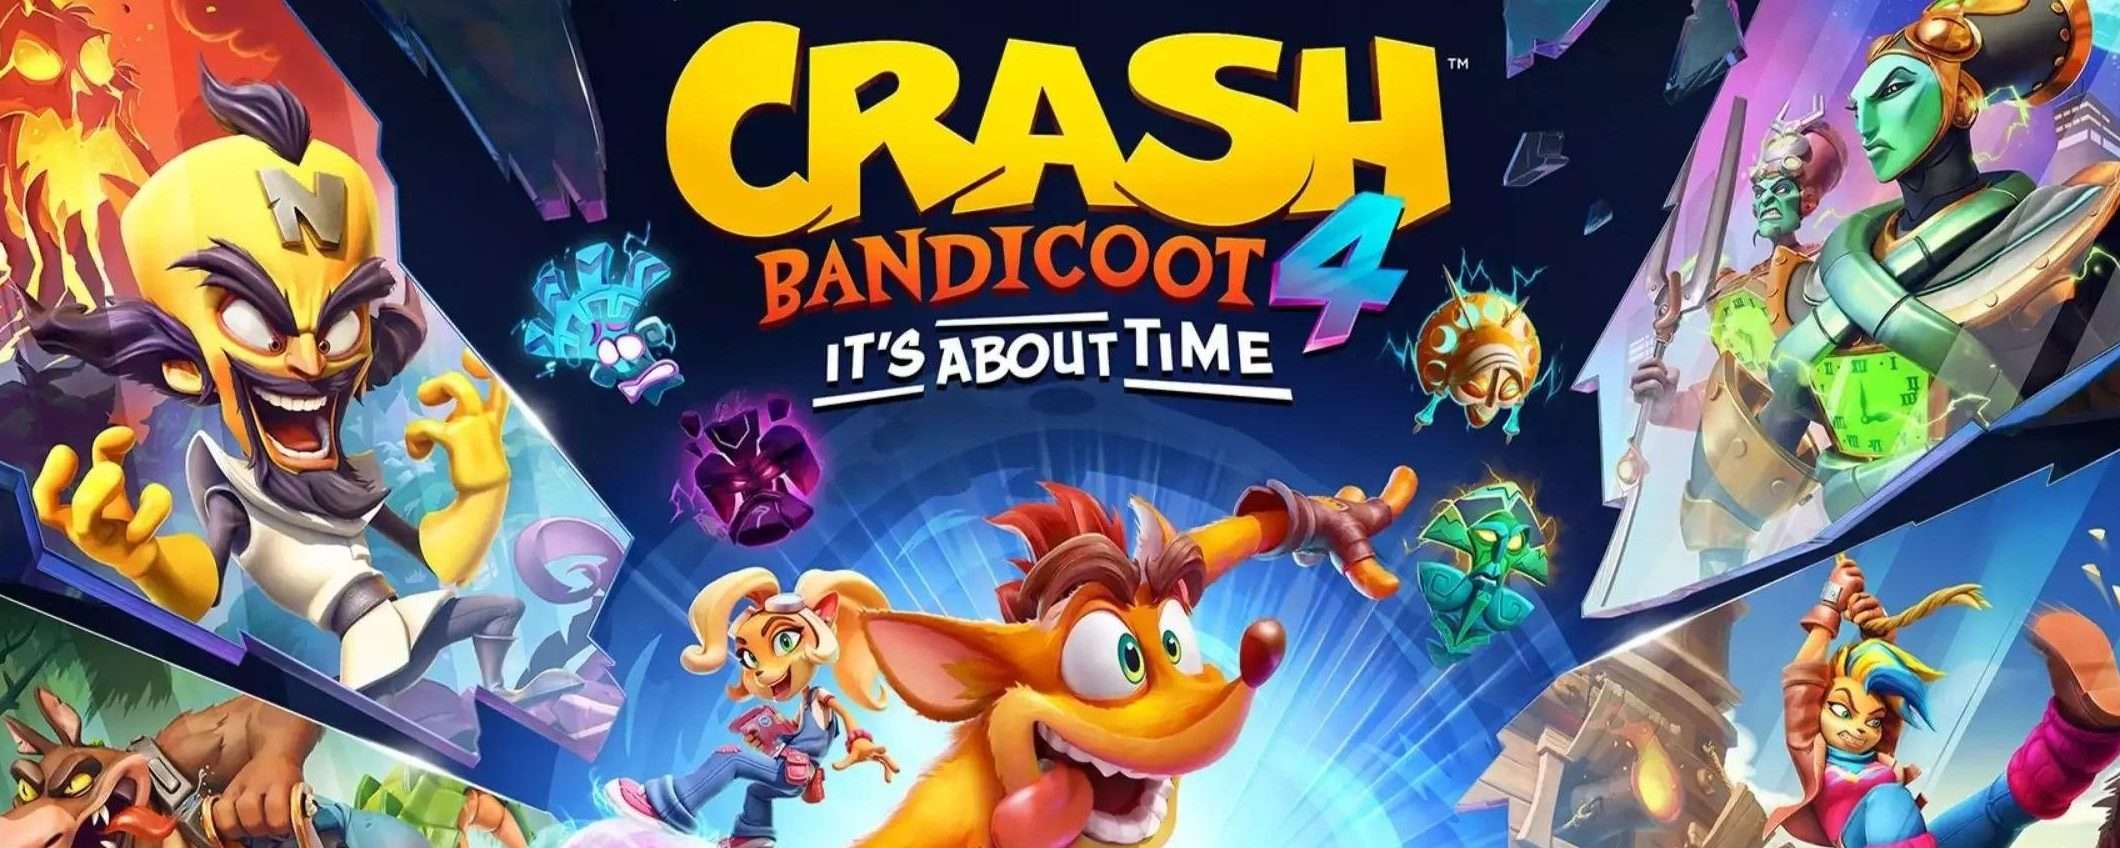 Crash Bandicoot 4 (PS4): prezzo WOW con 57% di sconto su Amazon